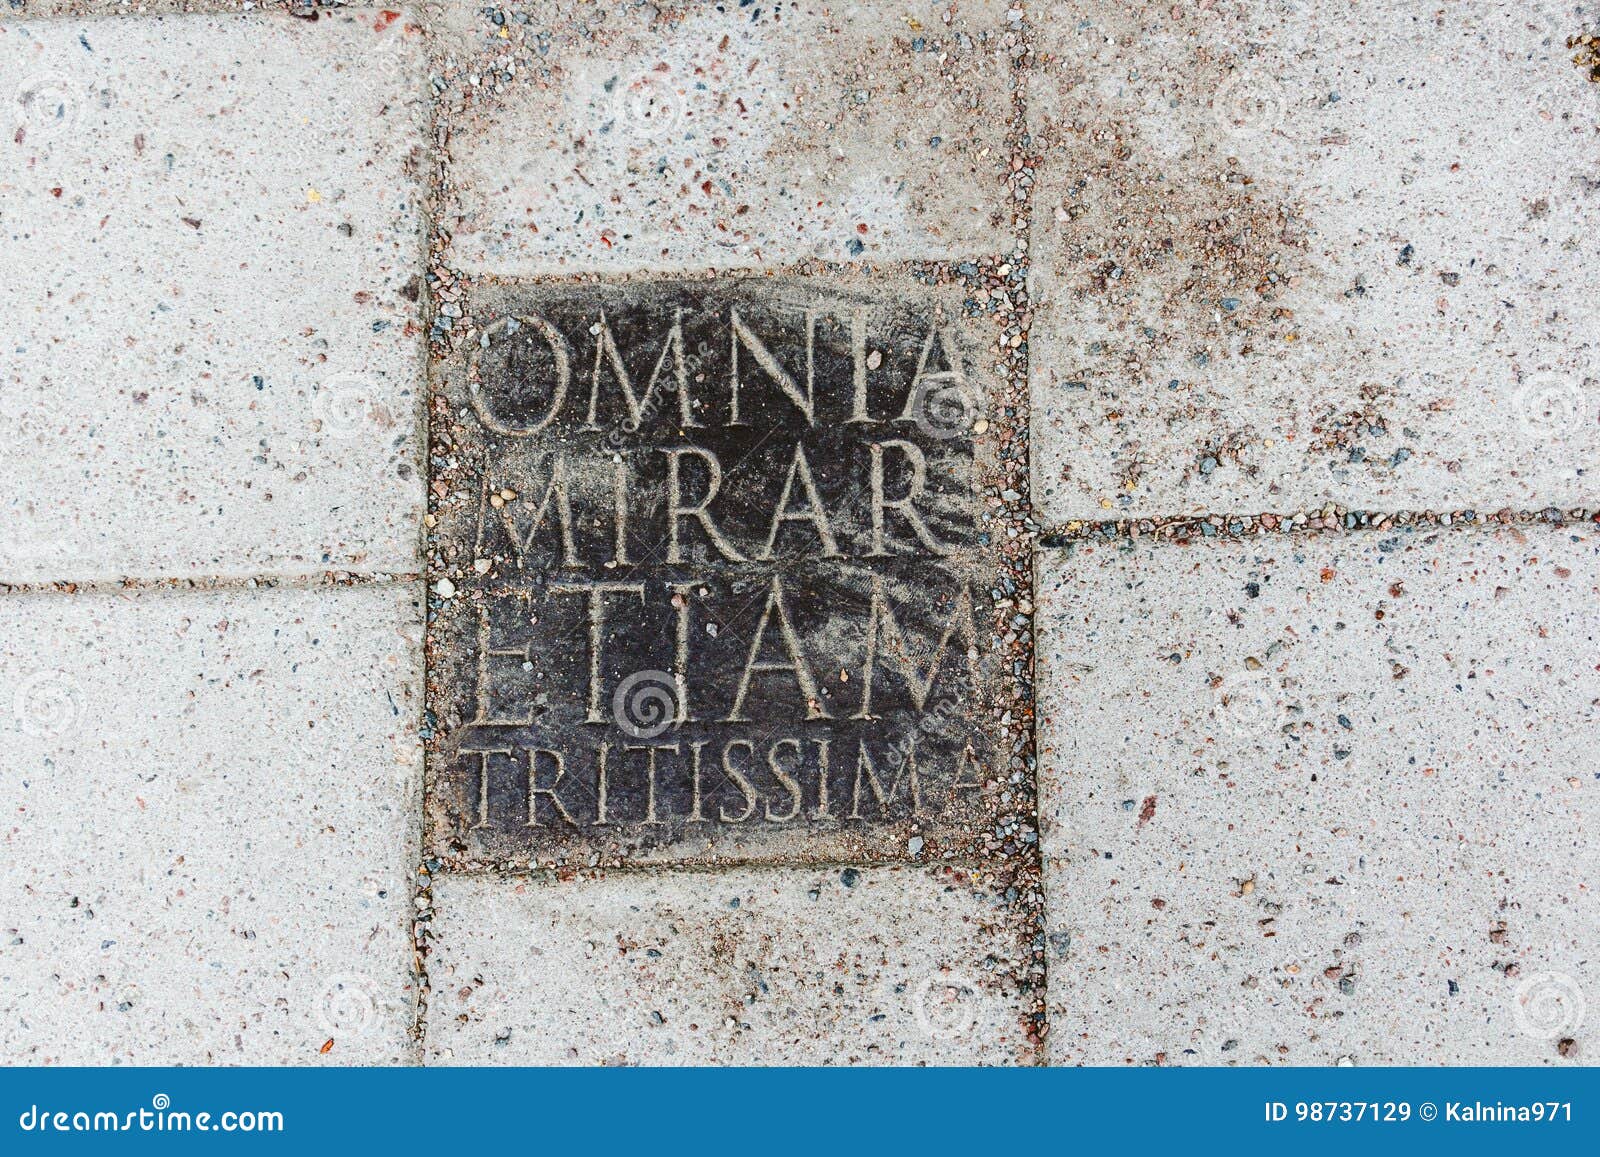 an inscription on a stone plate - omnia mirari etiam tritissima